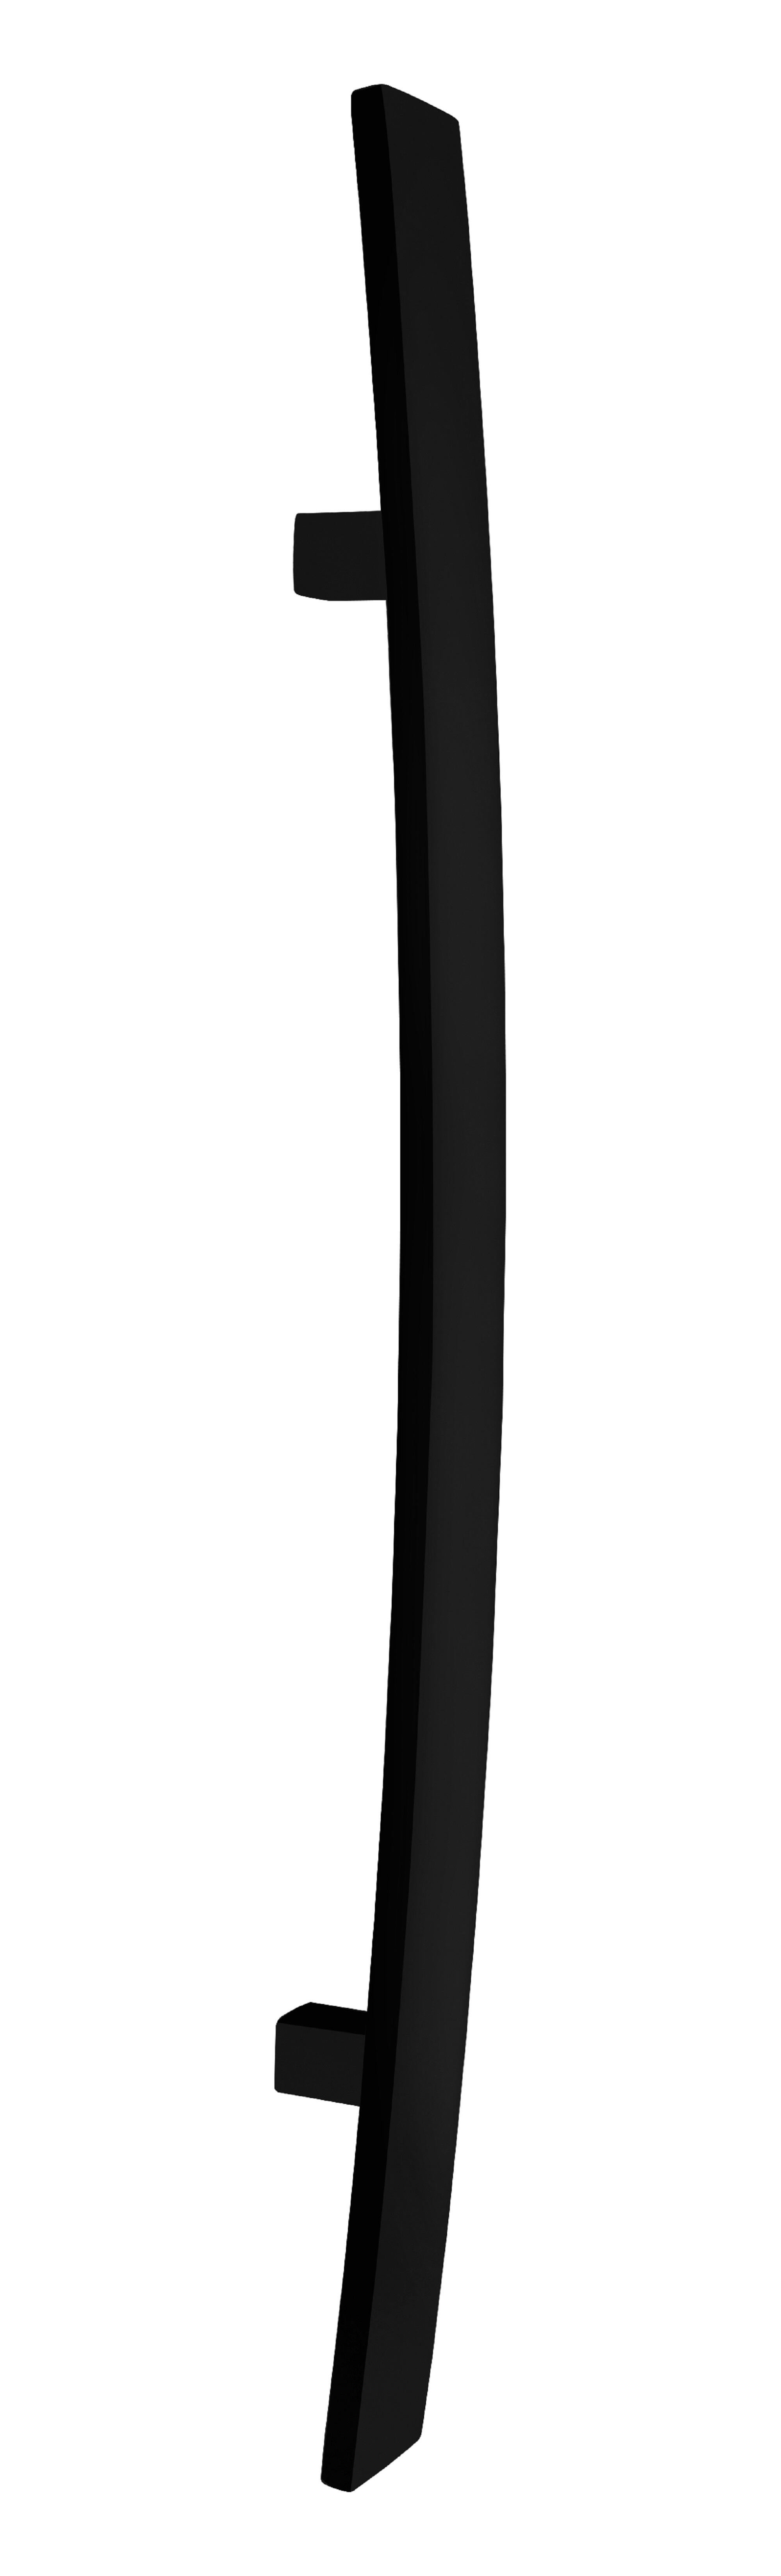 Manillón curvo inox 1500mm 40x10 epoxi negro